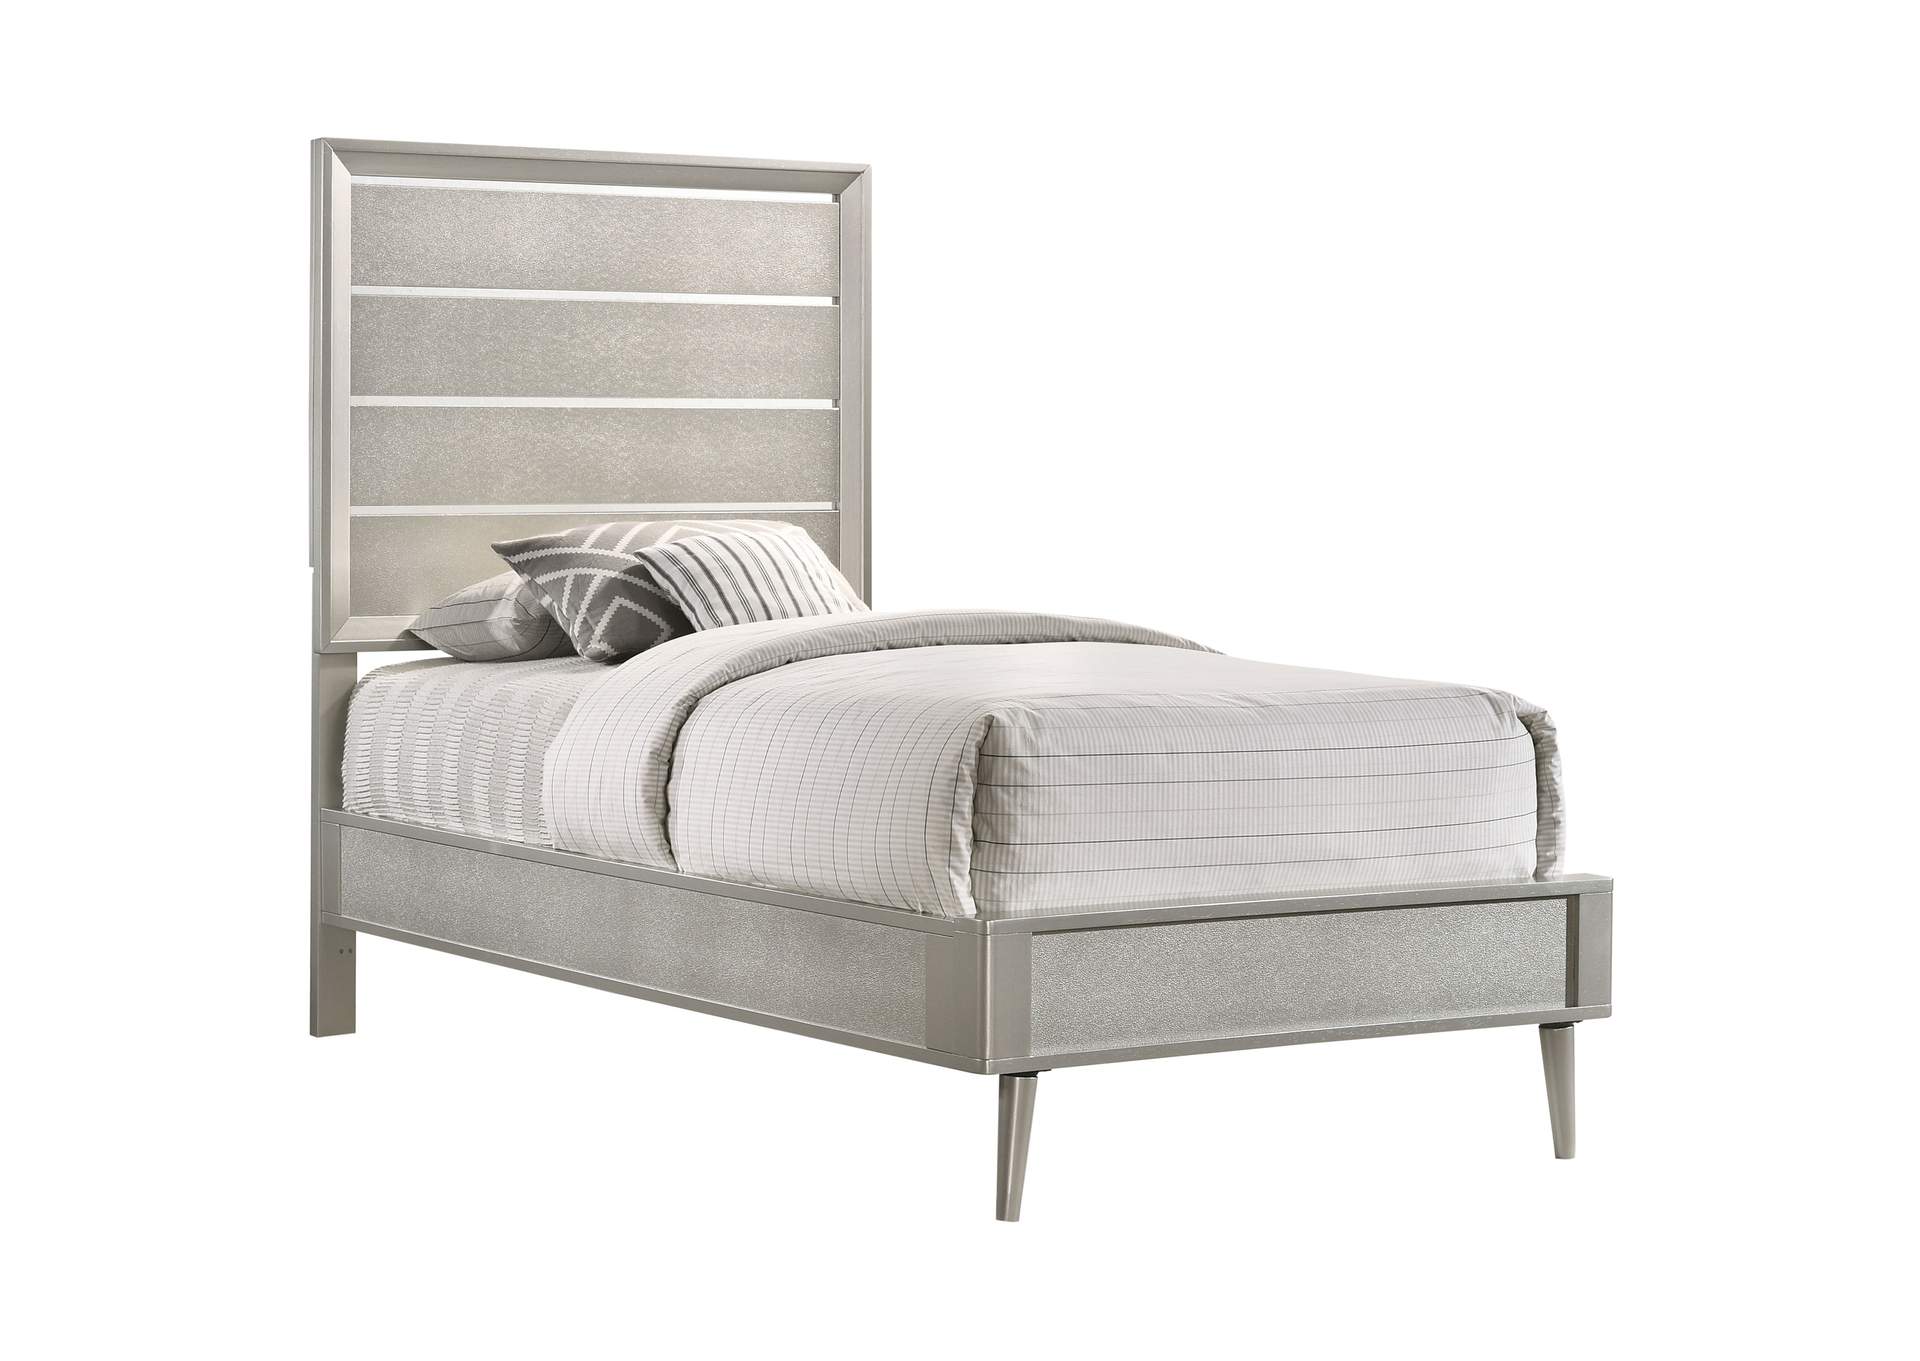 Ramon Twin Panel Bed Metallic Sterling,Coaster Furniture